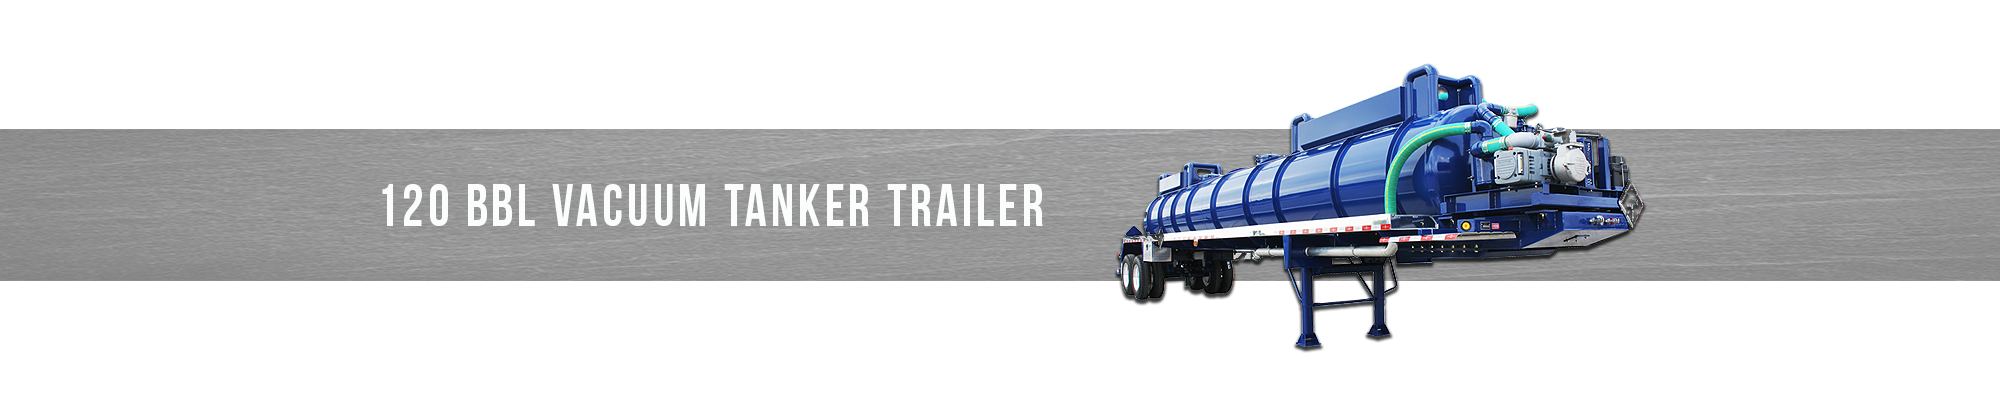 120 BBL Vacuum Tanker Trailer